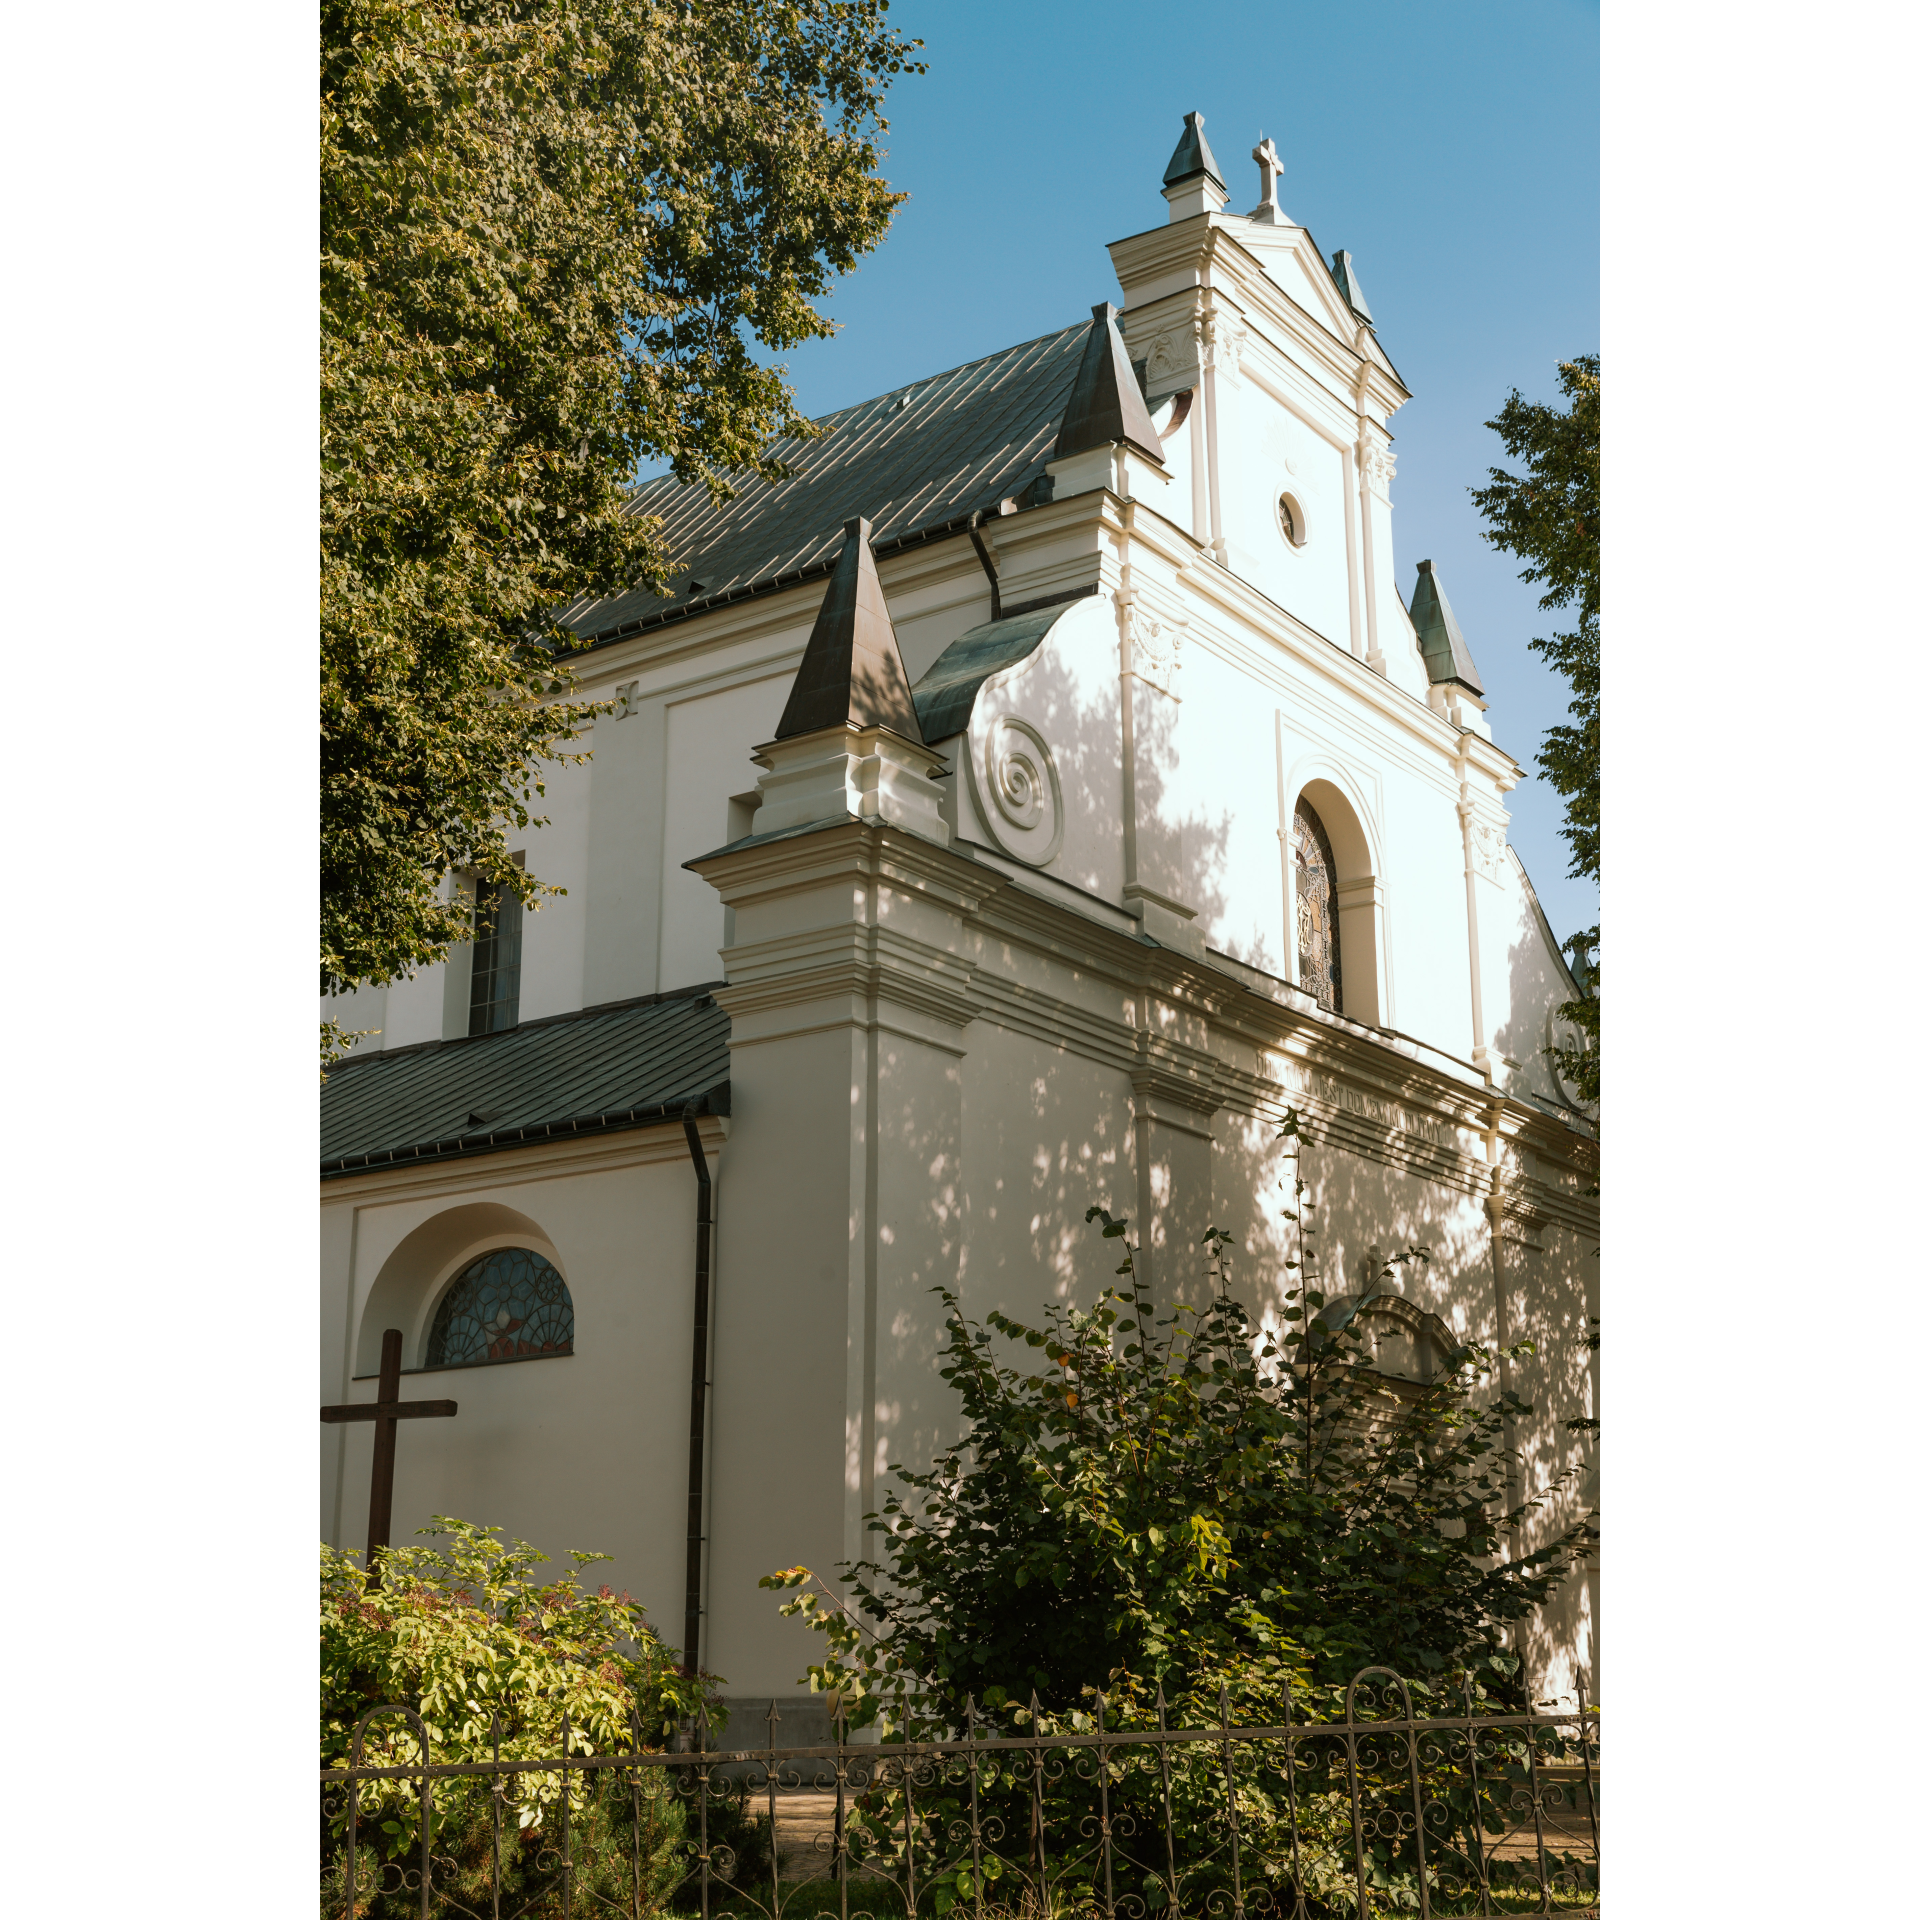 Kościół o jasnym kolorze fasady, półokrągłe okna i strzeliste daszki i wieżyczki oraz ozdobne rzeźbienia na froncie